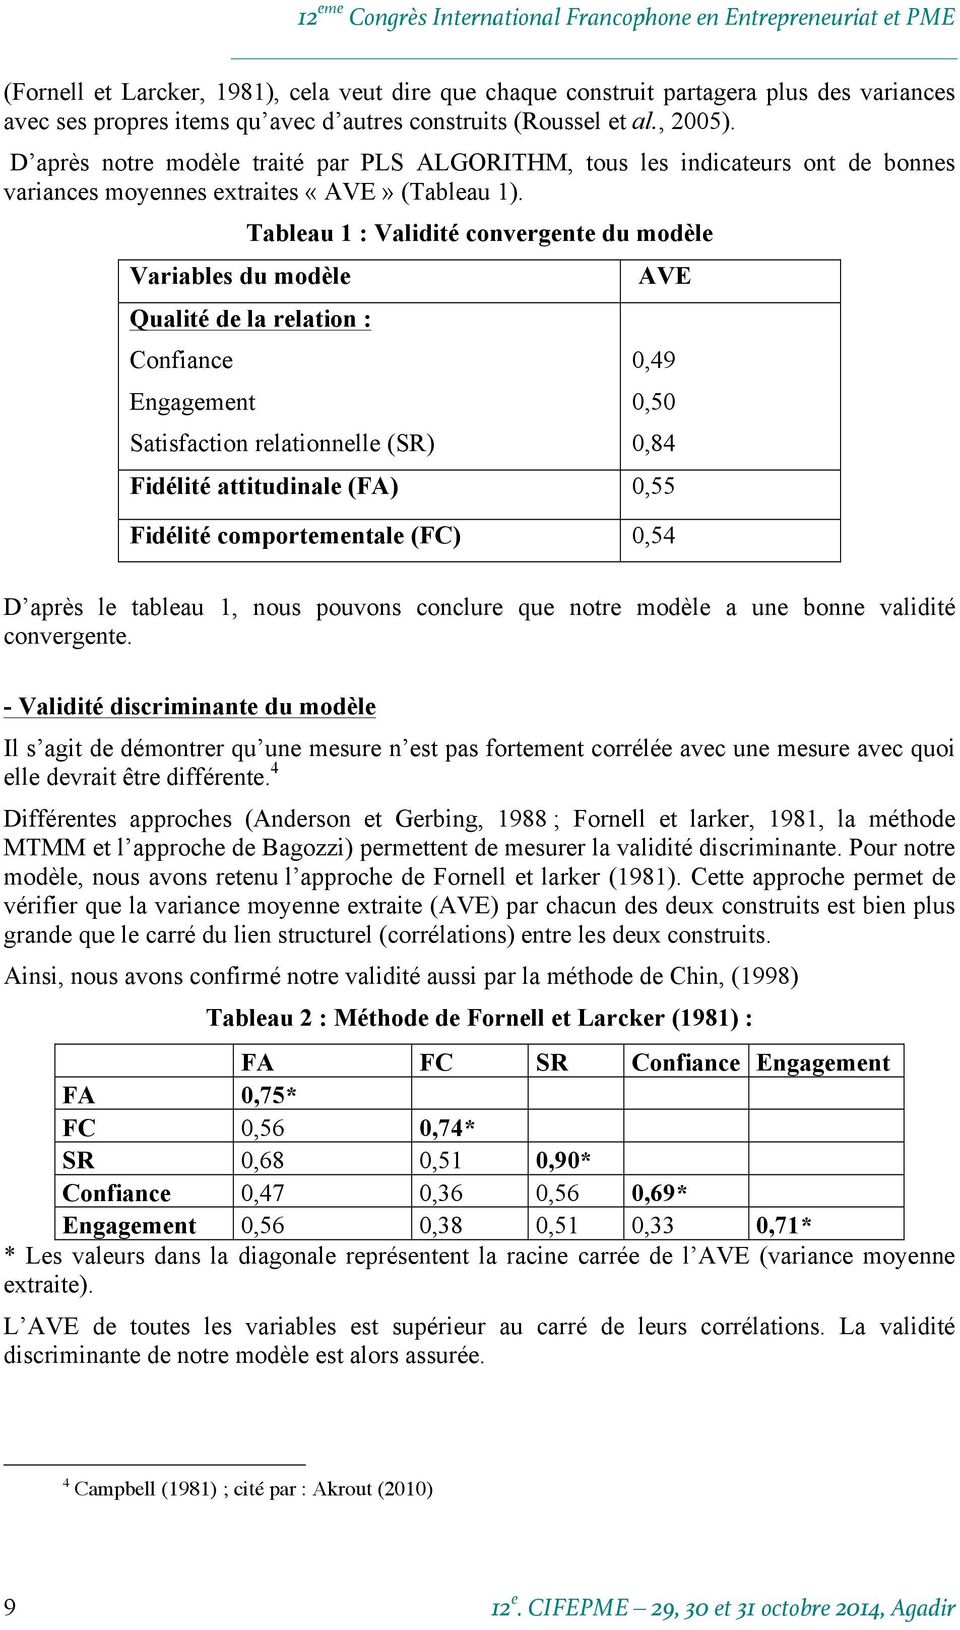 Variables du modèle Tableau 1 : Validité convergente du modèle Qualité de la relation : Confiance Engagement Satisfaction relationnelle (SR) AVE 0,49 0,50 0,84 Fidélité attitudinale (FA) 0,55